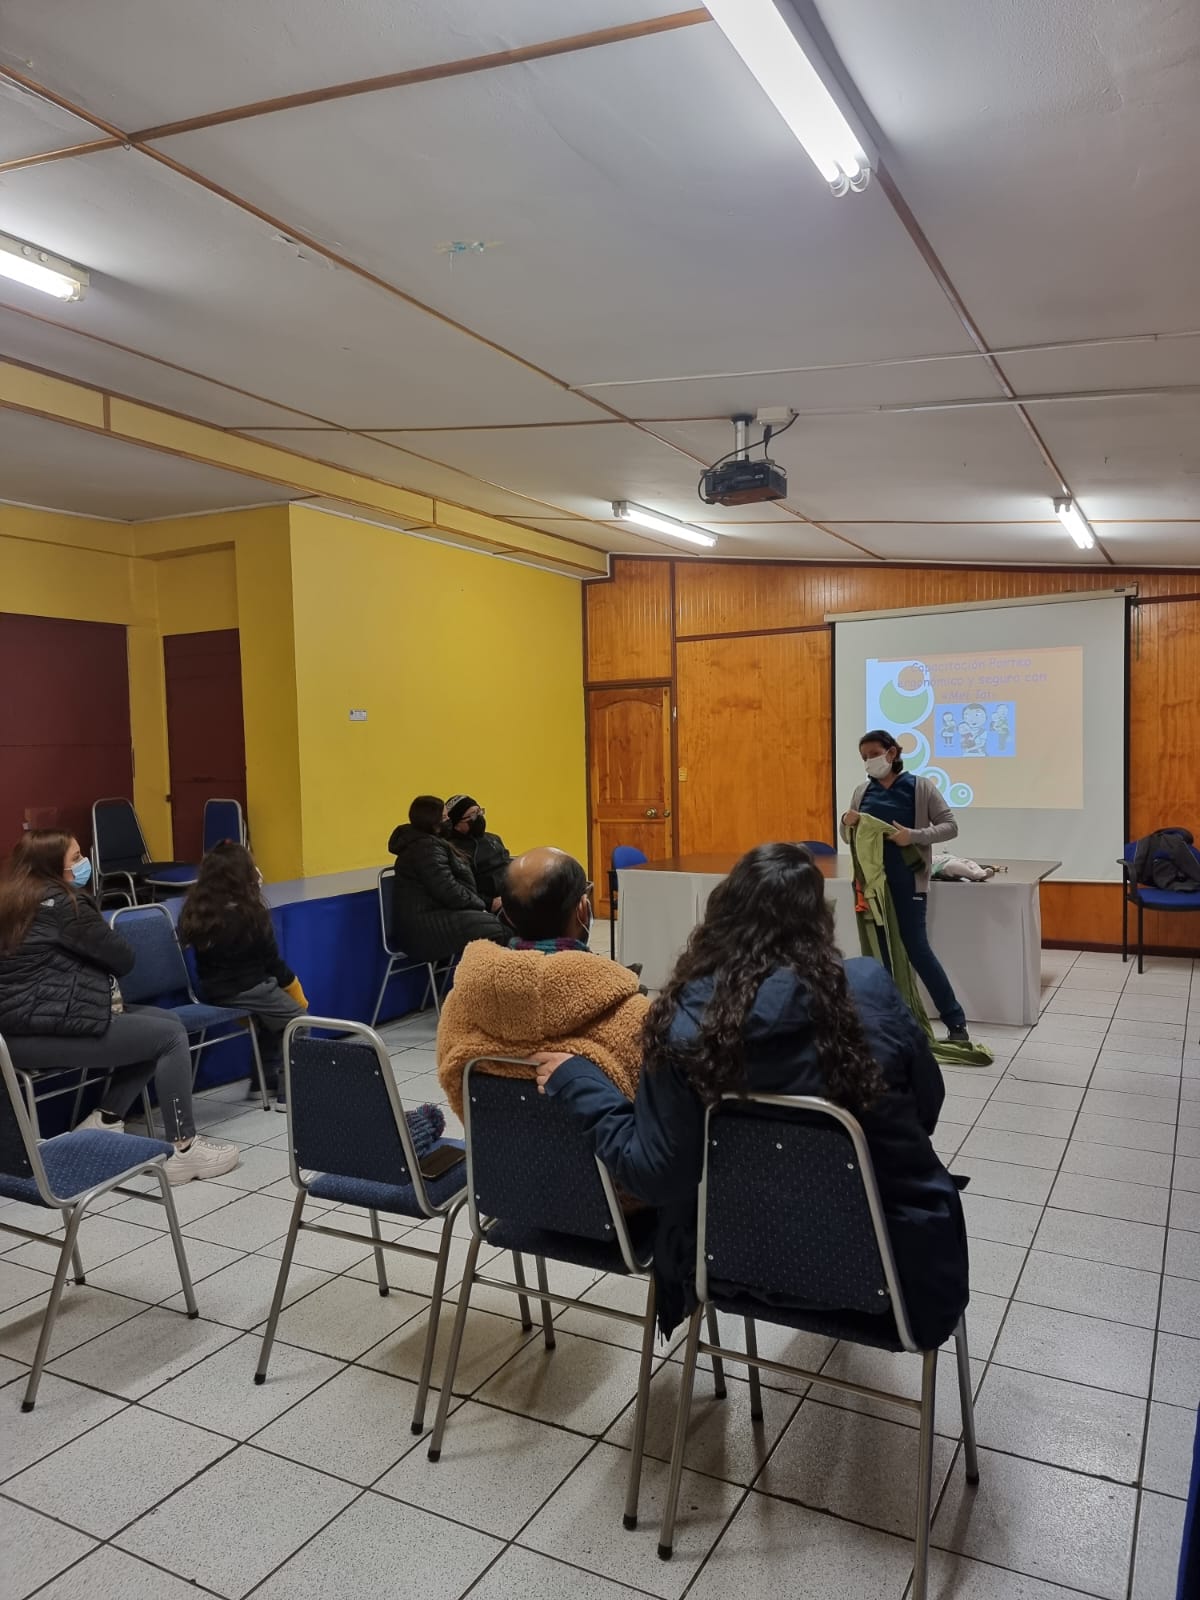 SAN ESTEBAN: Departamento de Salud y programa “Chile Crece Contigo” realizarán talleres prenatales para embarazadas en diferentes etapas de gestación